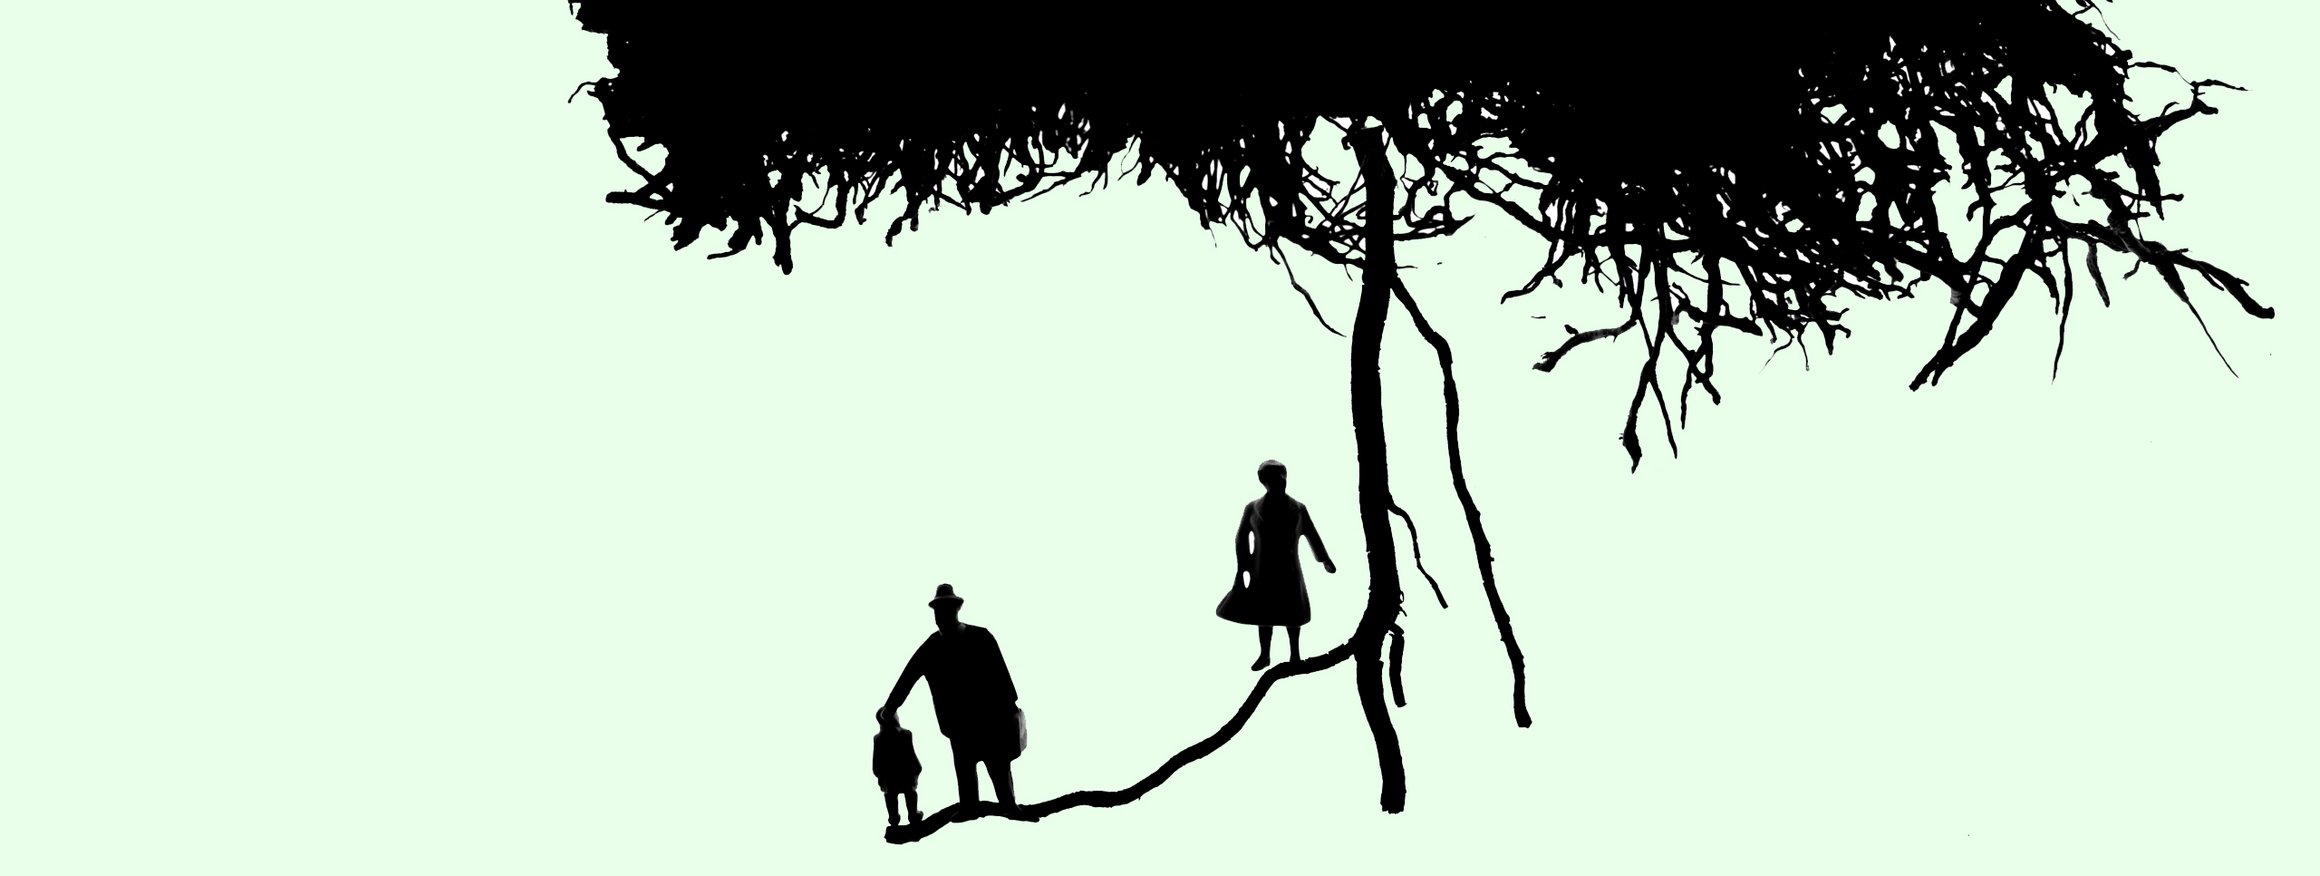 Die Illustration zeigt einen Vater mit seinem Kind an einer abzweigenden Wurzel eines Baumes, während die Mutter allein am Hauptstamm steht